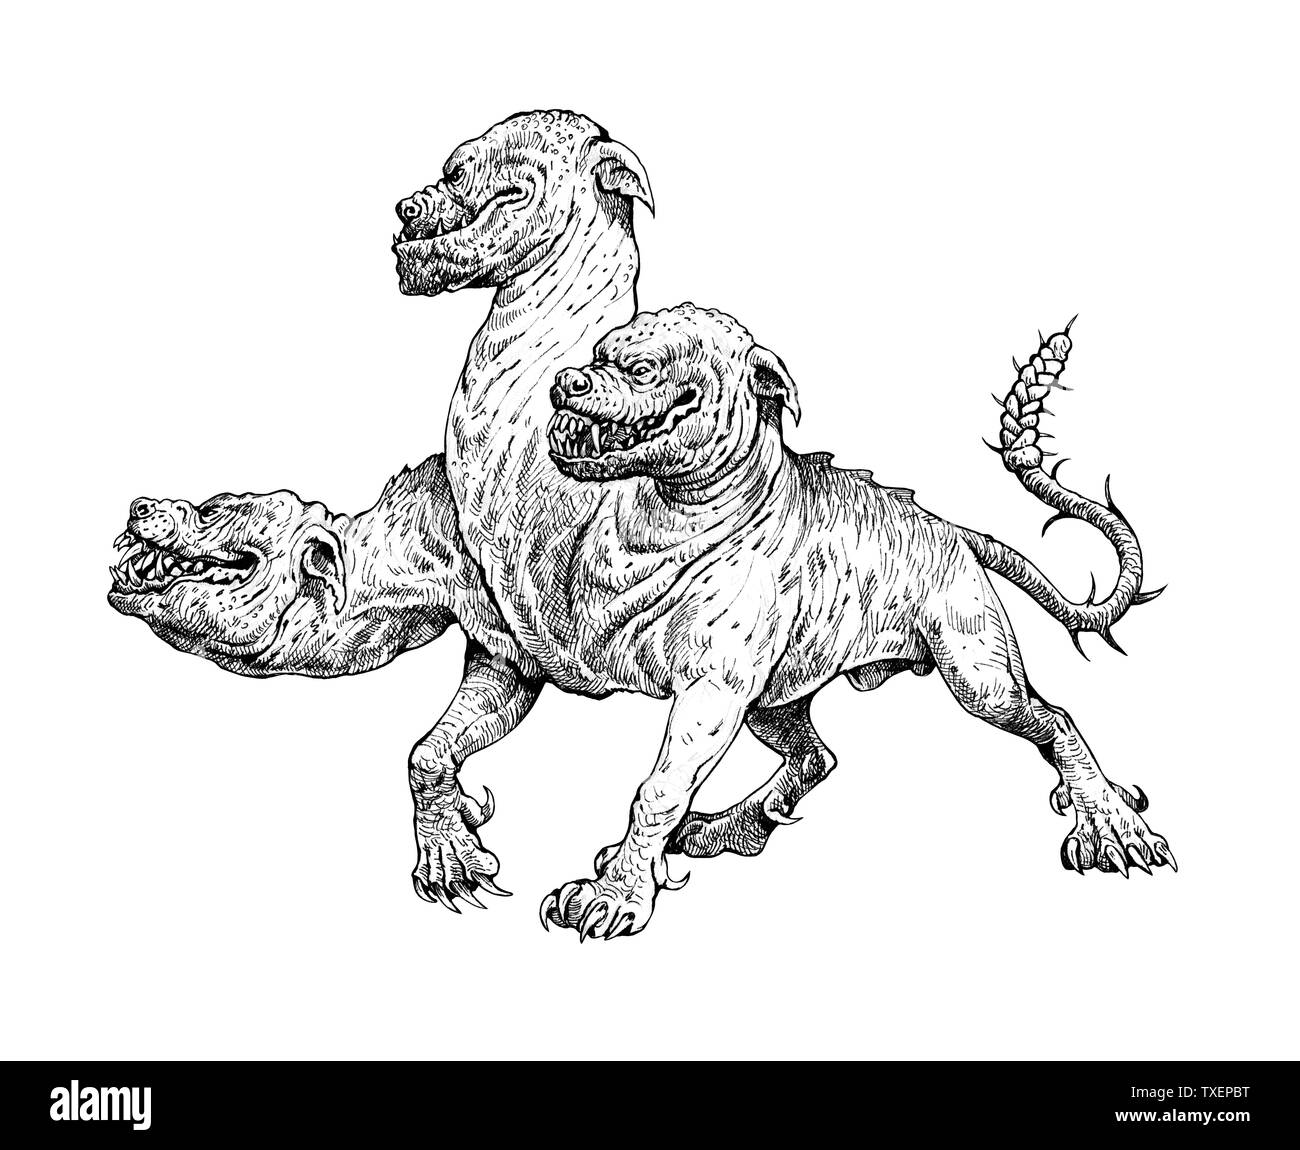 Multi vorangegangen Hund Cerberus Zeichnung. Hund der Hades. Der  griechischen Mythologie Abbildung Stockfotografie - Alamy